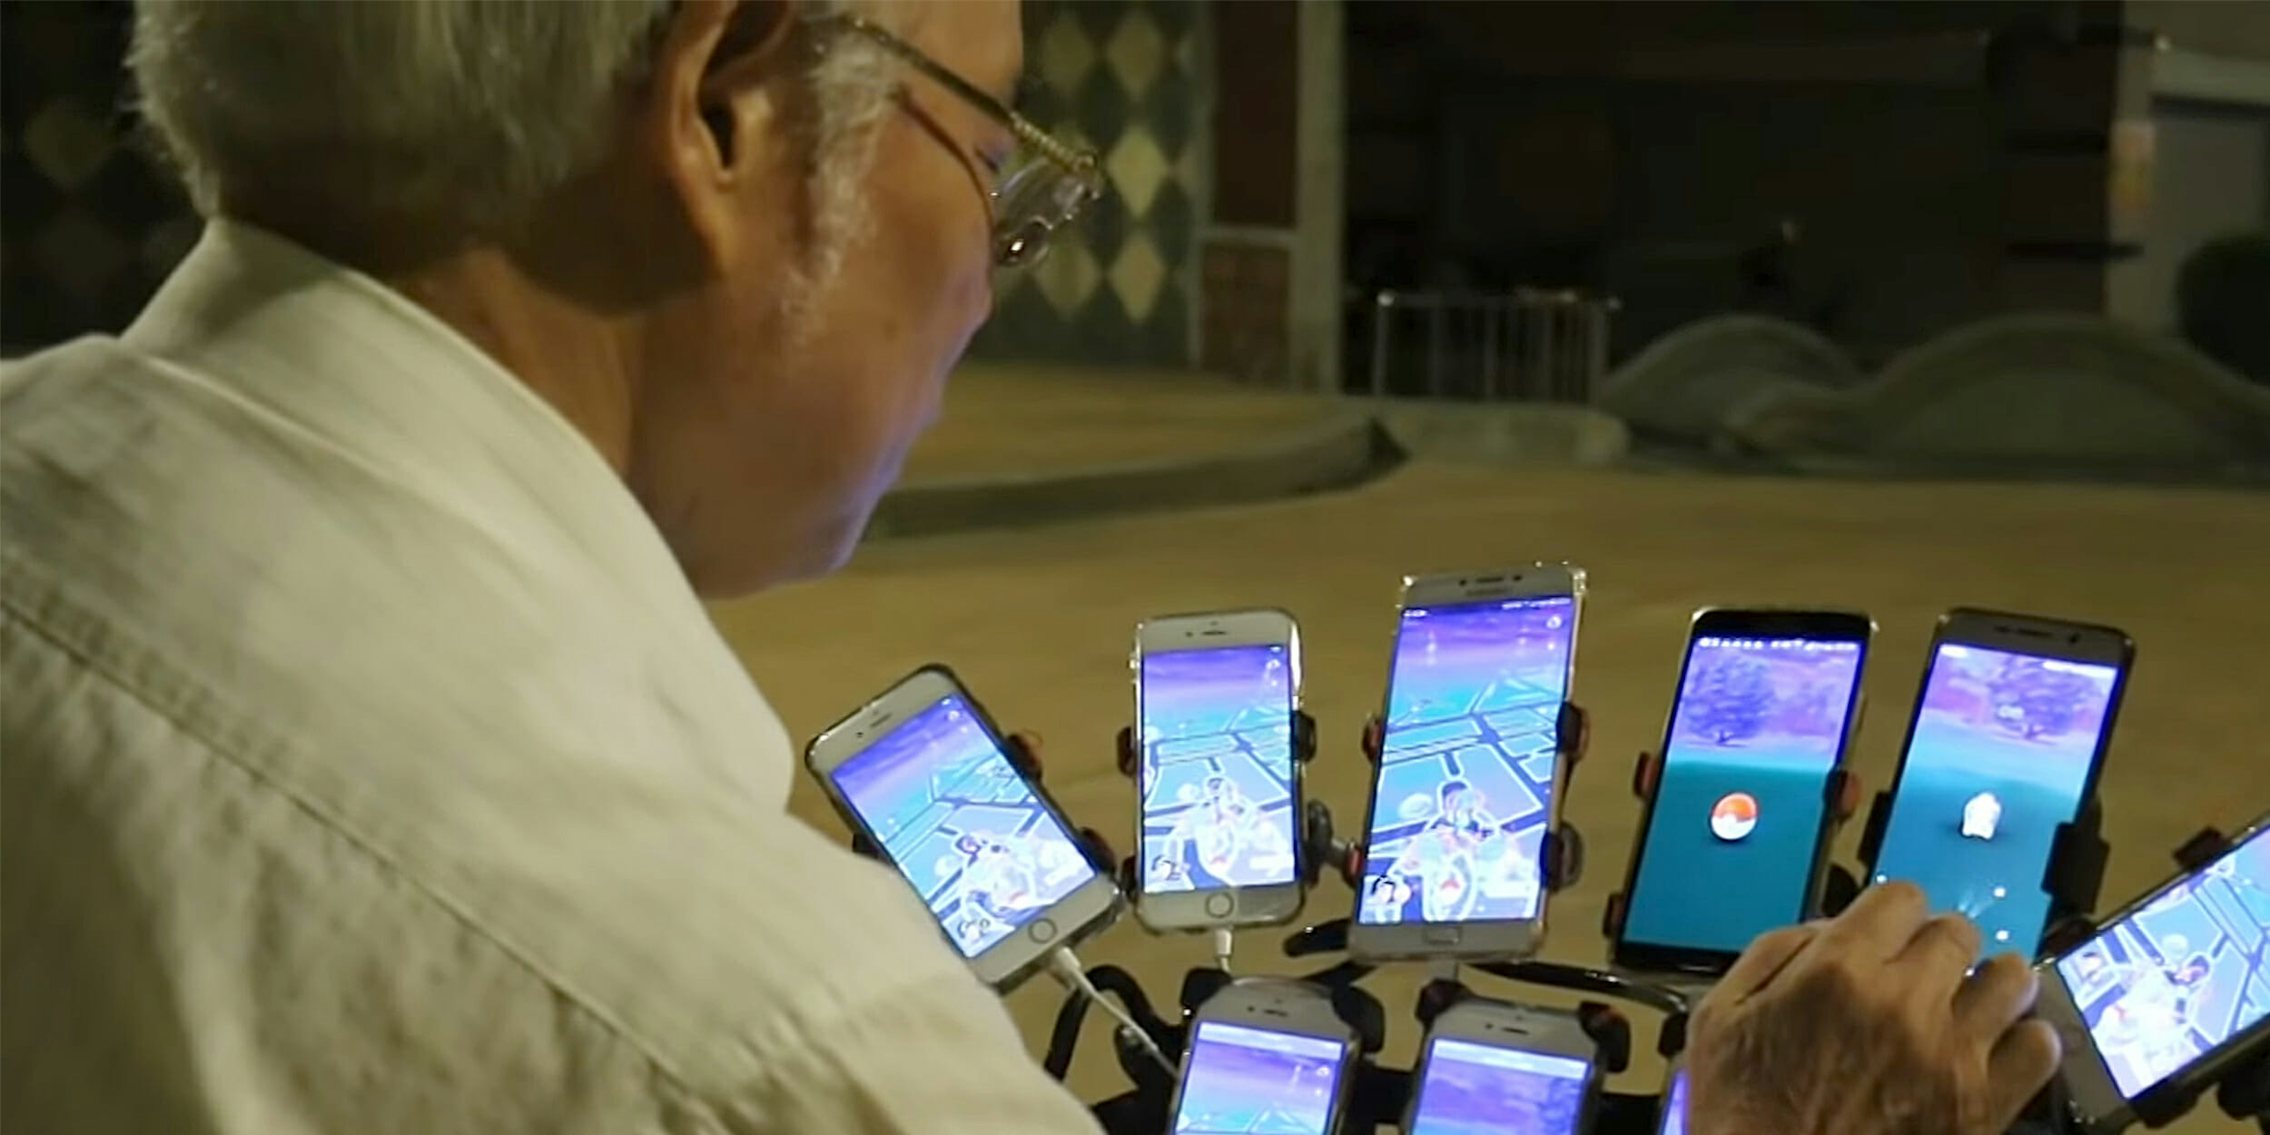 grandpa uses 9 phones to play pokemon go